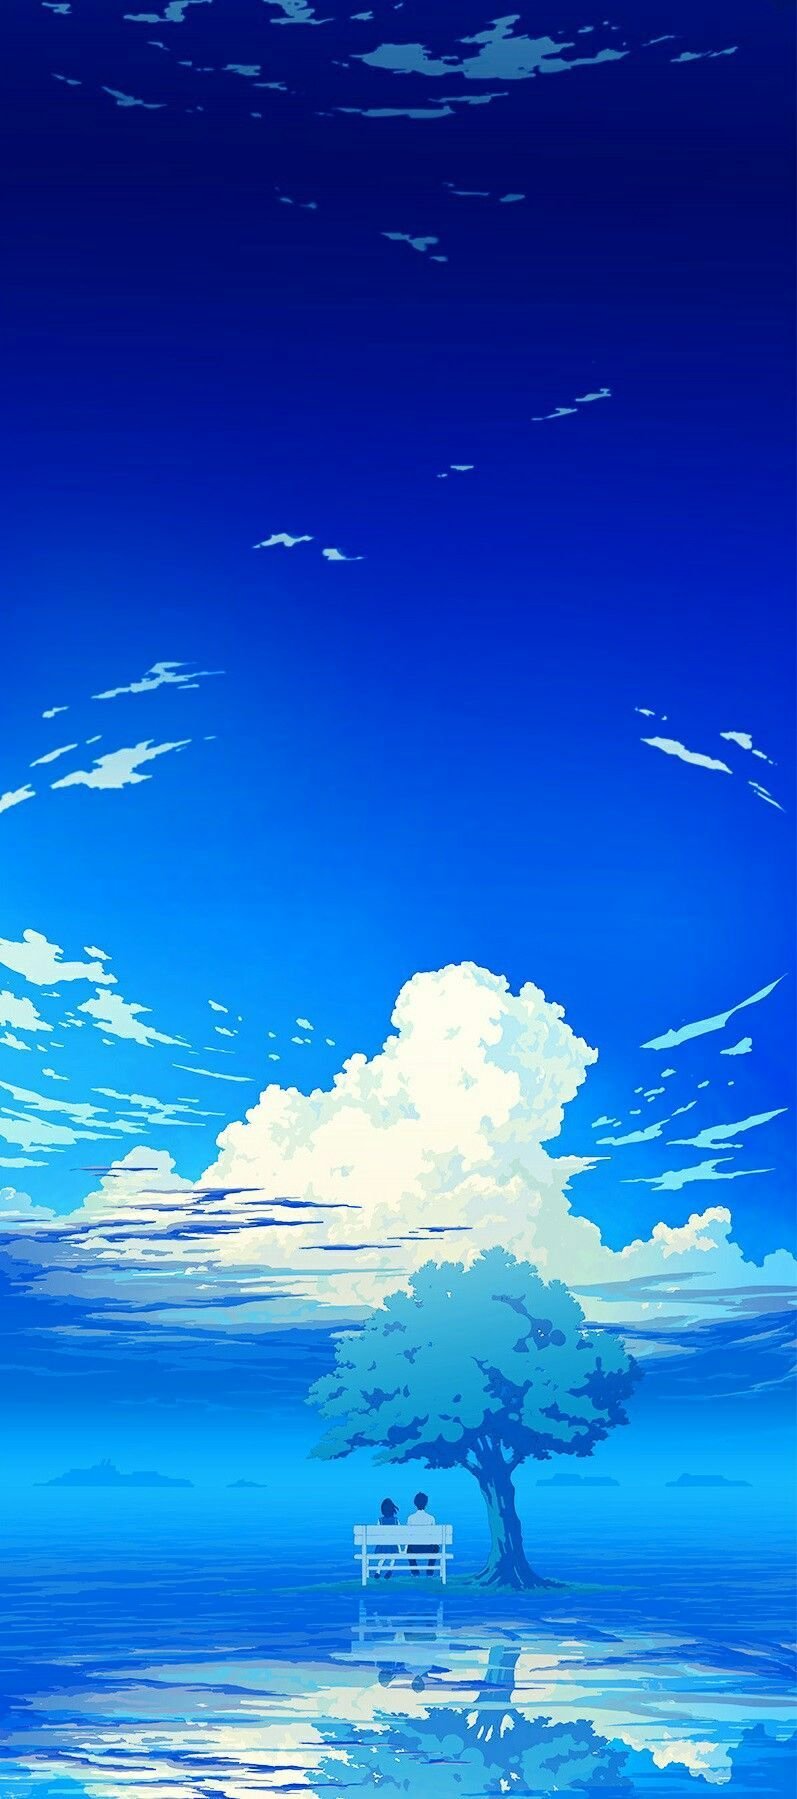 Share more than 158 anime night sky wallpaper - 3tdesign.edu.vn